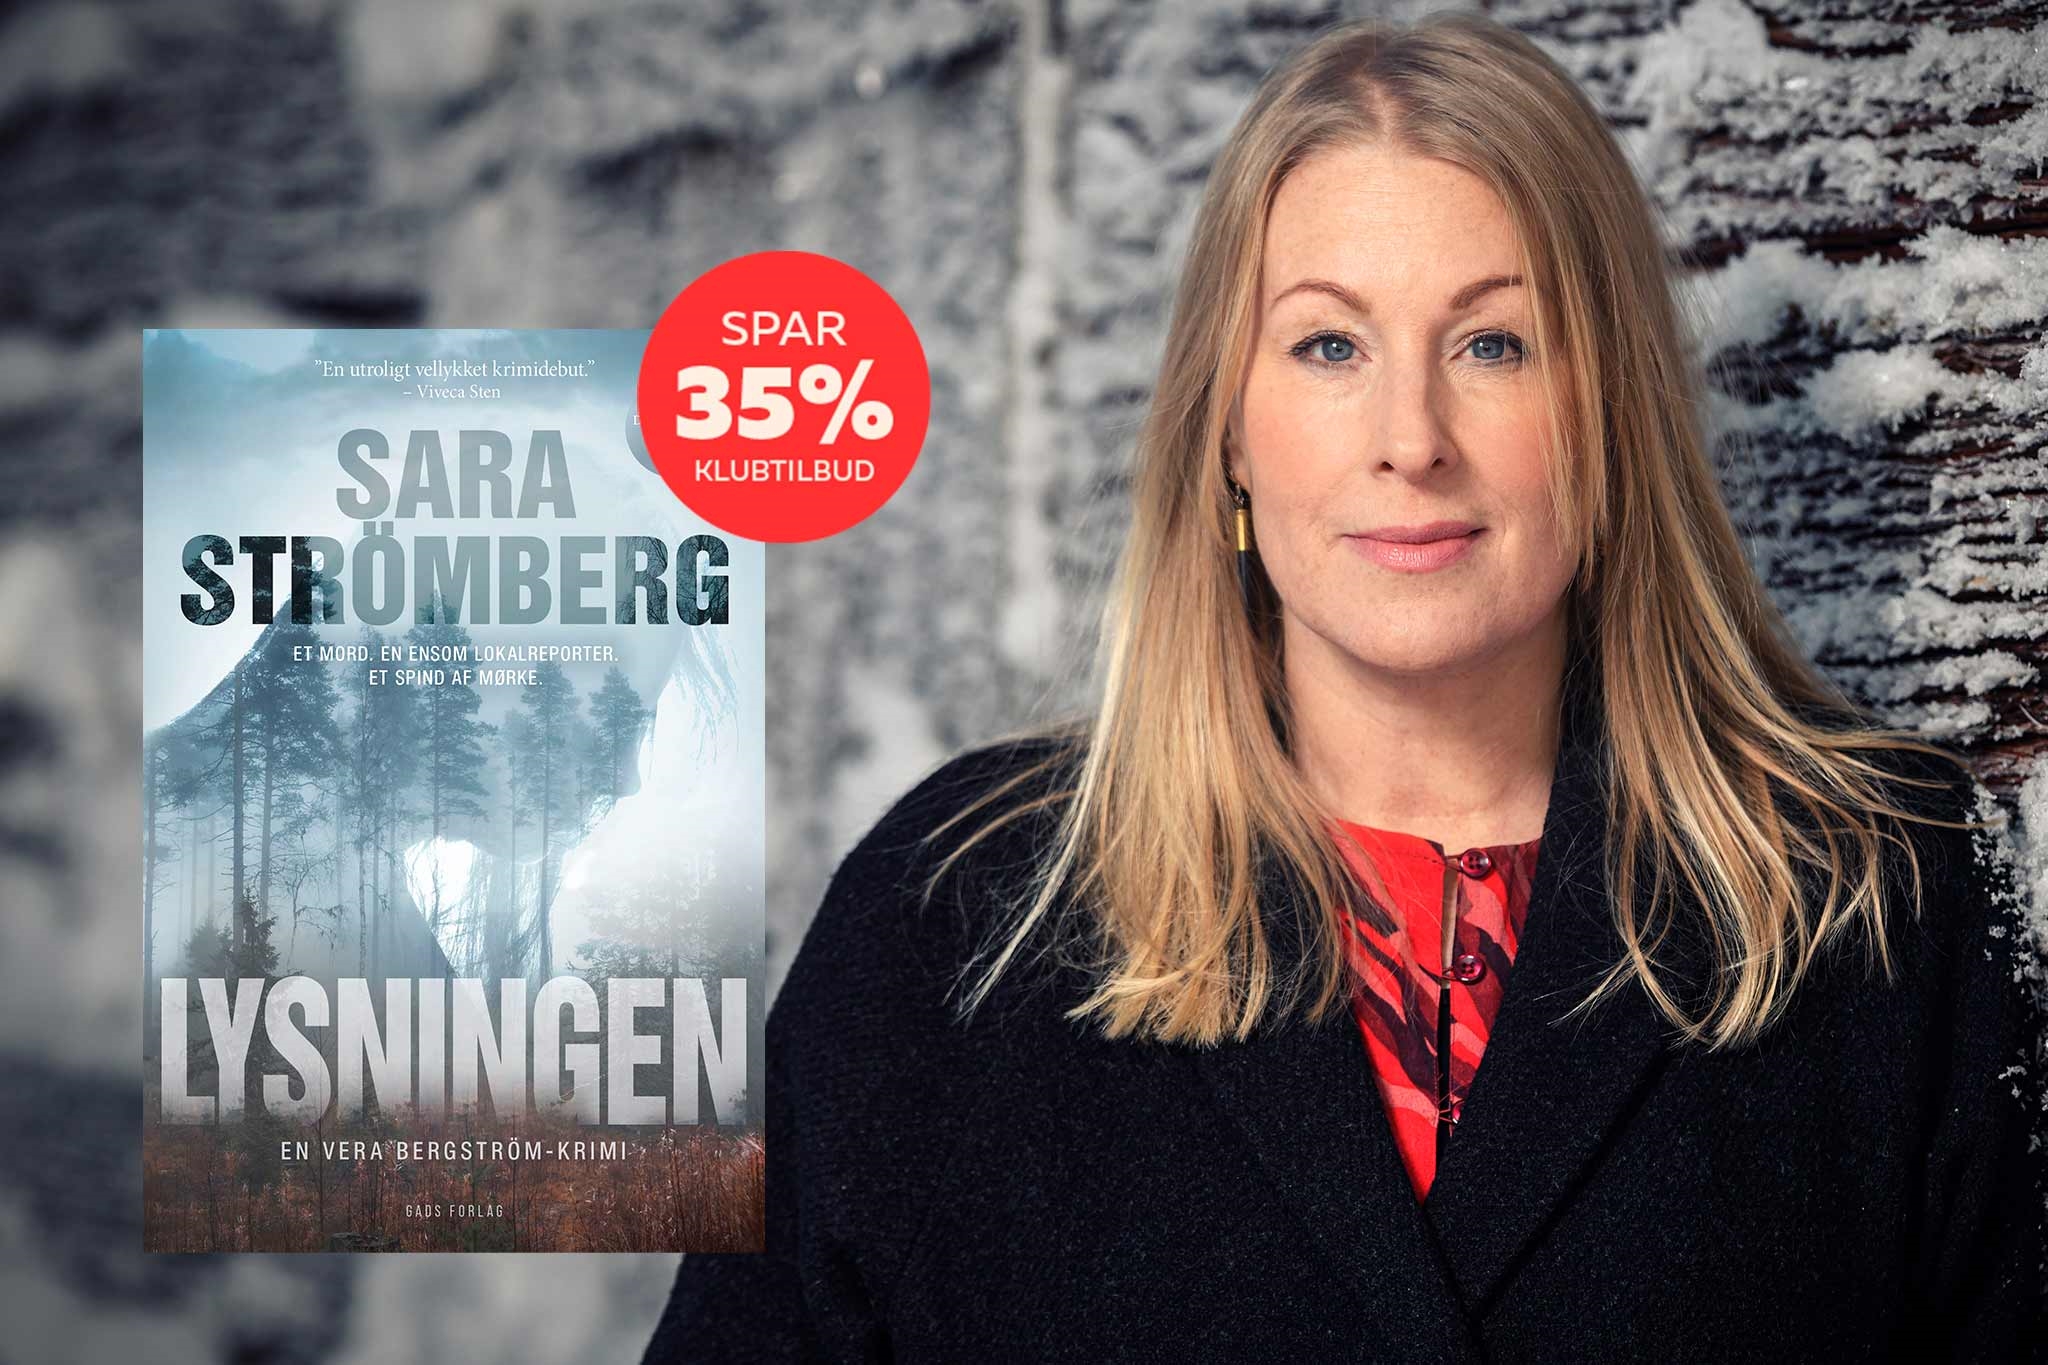 Klubtilbud spar 35 på Lysningen af Sara Strömberg